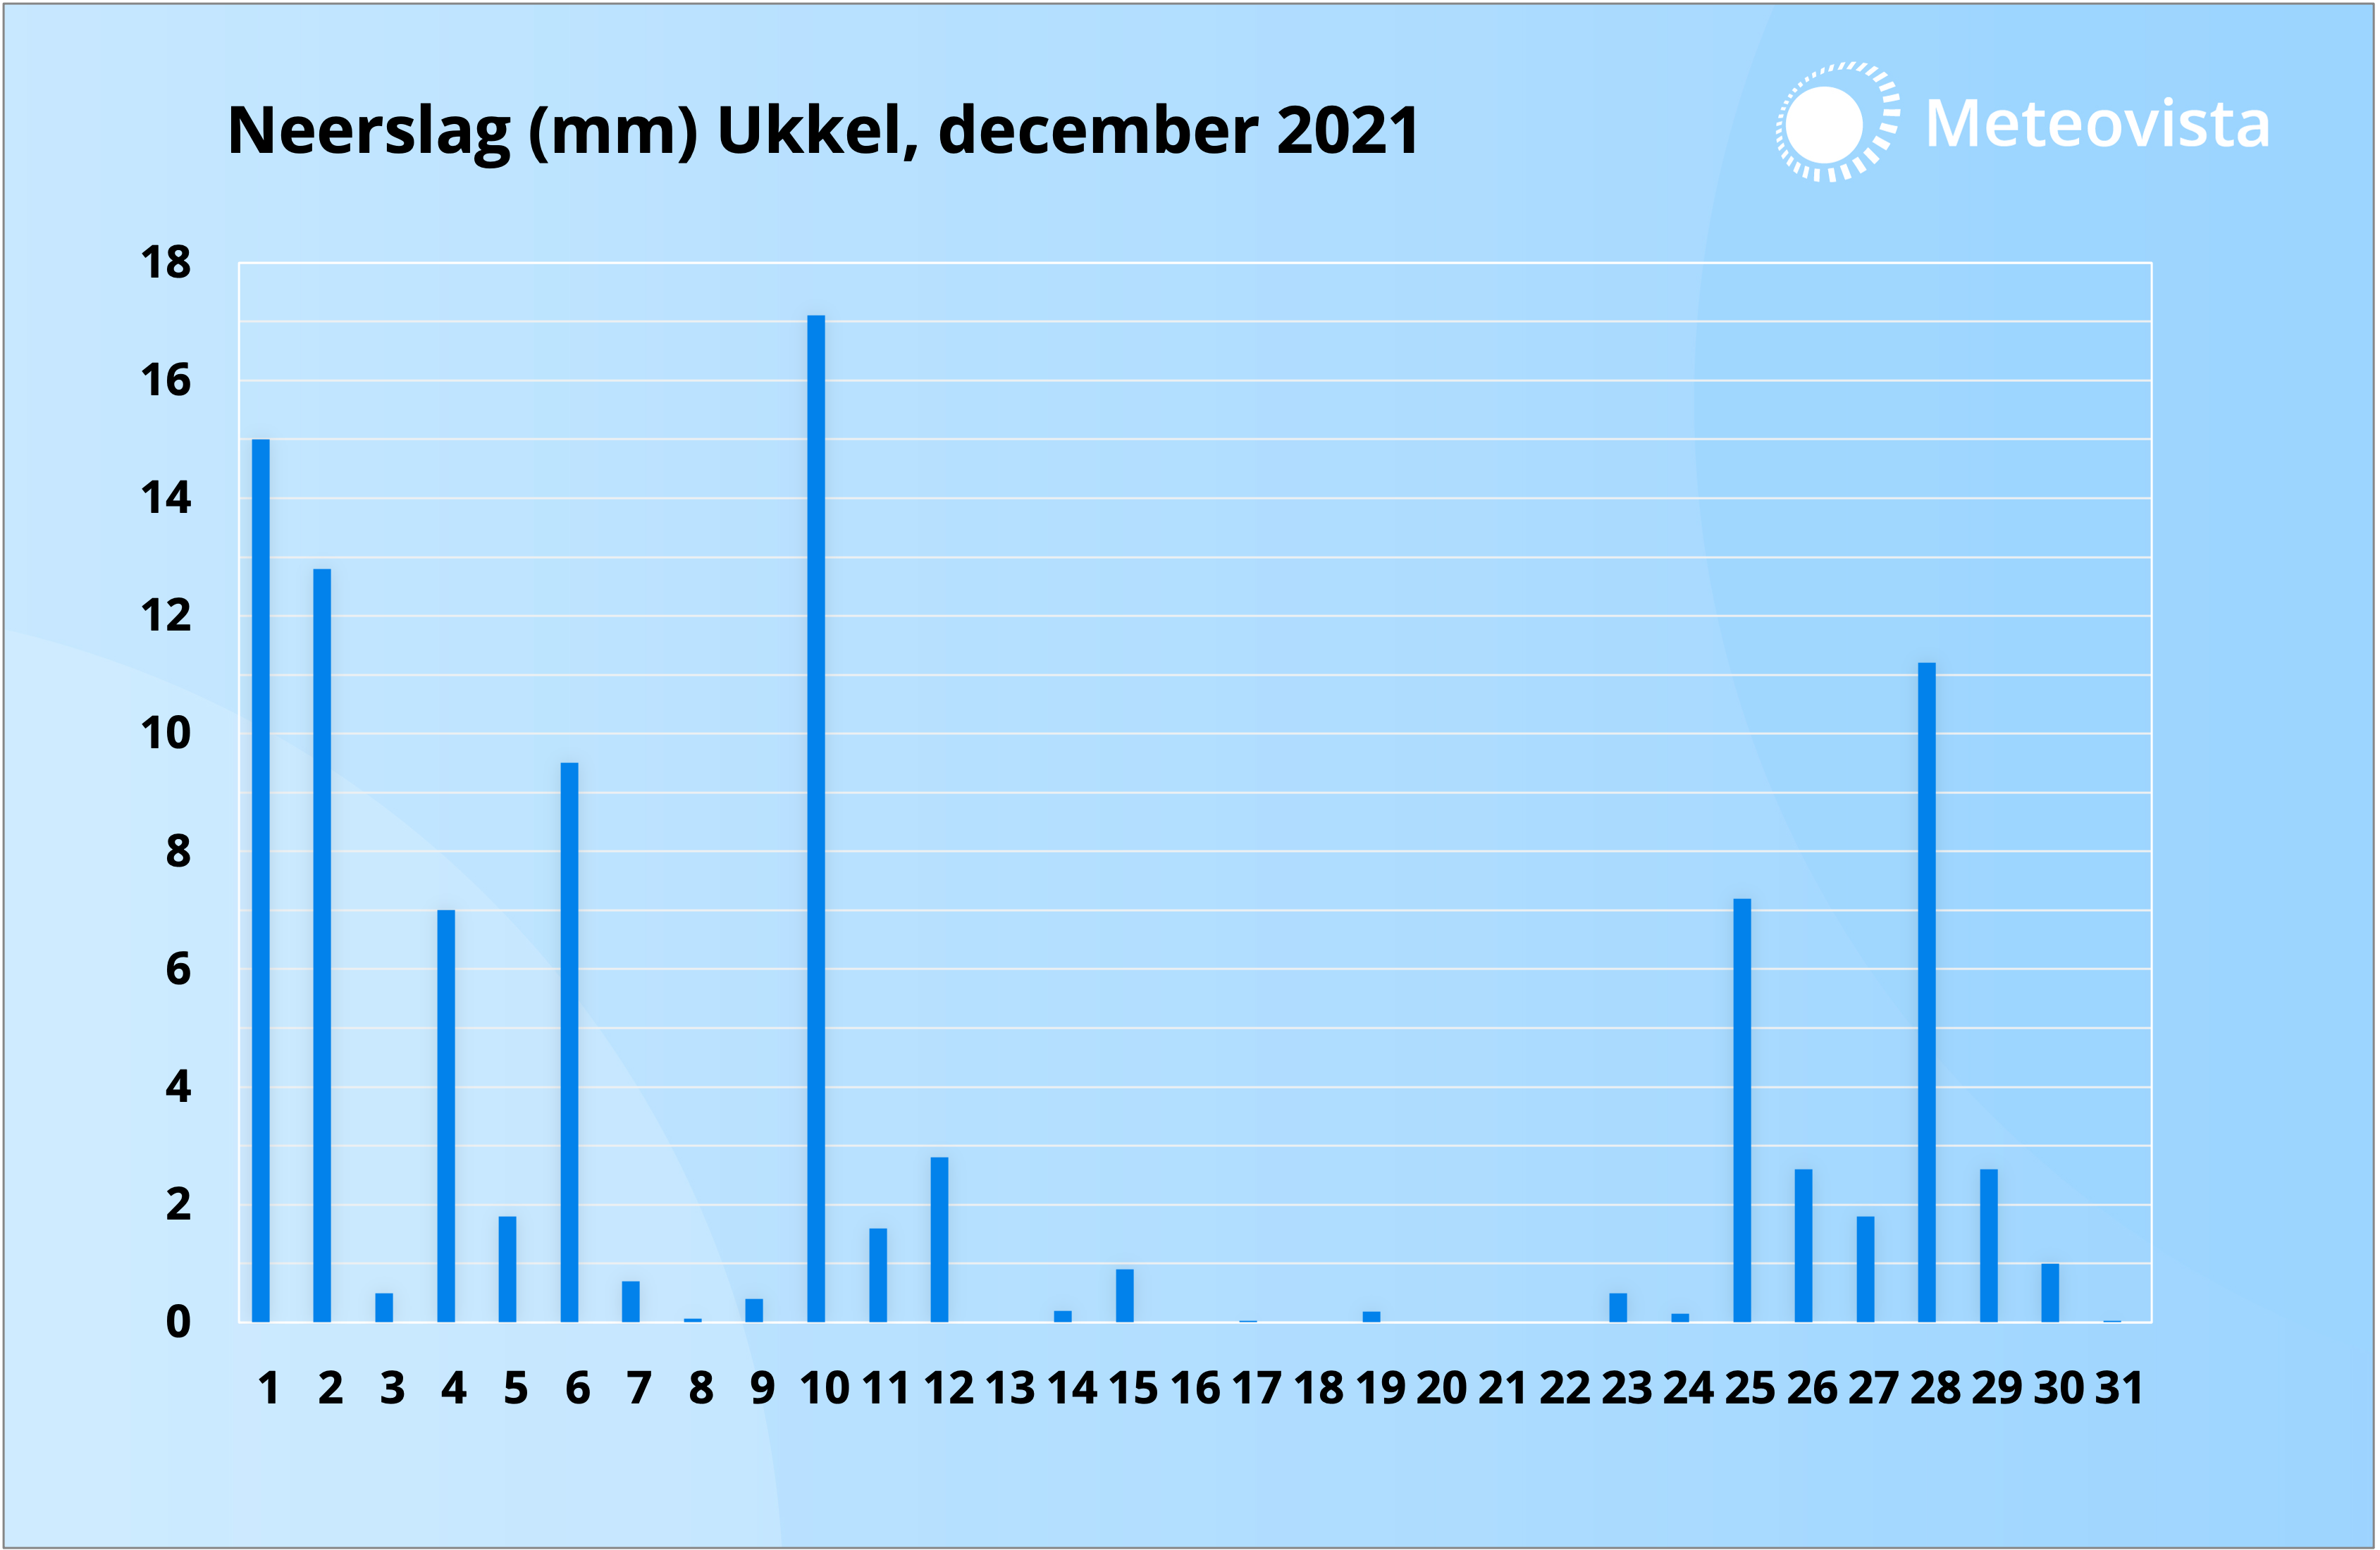 Neerslaggrafiek terugblik december 2021 Ukkel